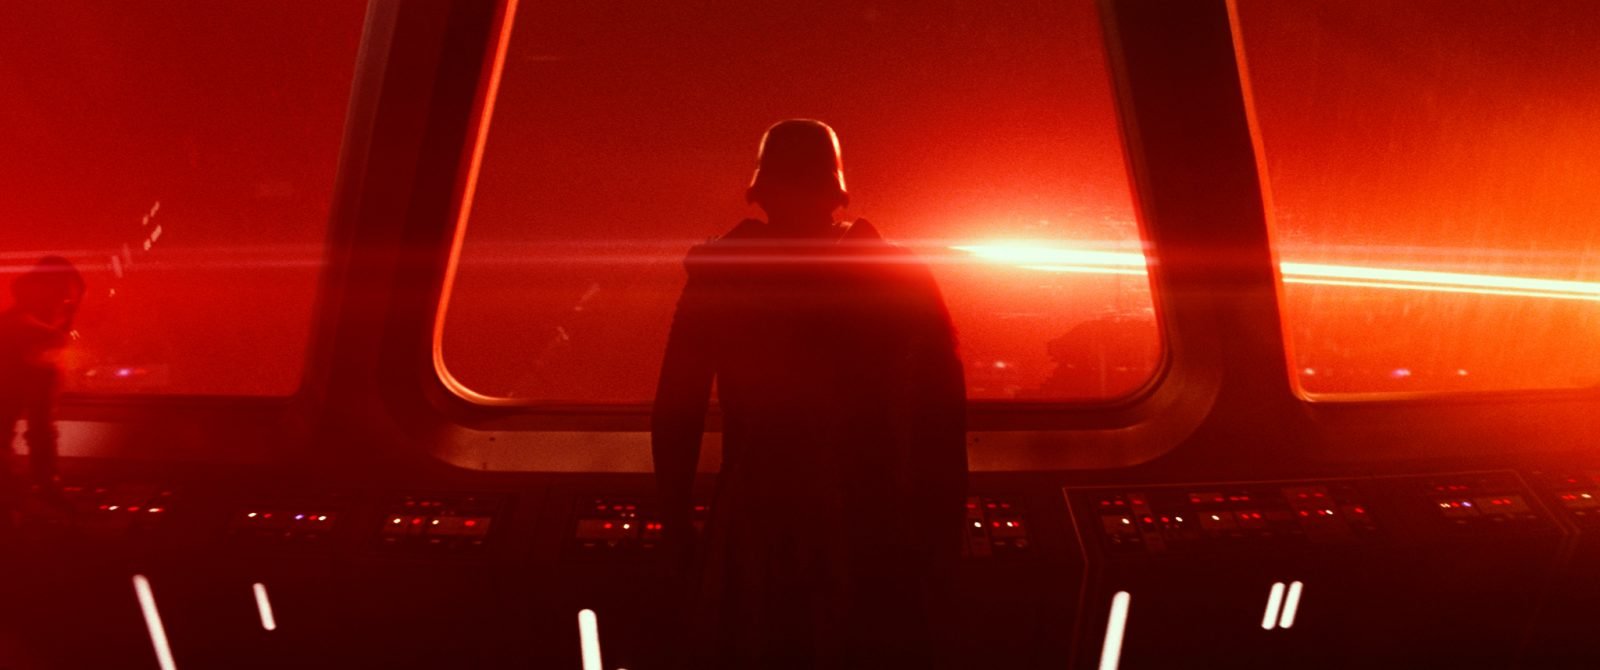 Star Wars VII The Force Awakens 3 - Kylo Ren on Starship